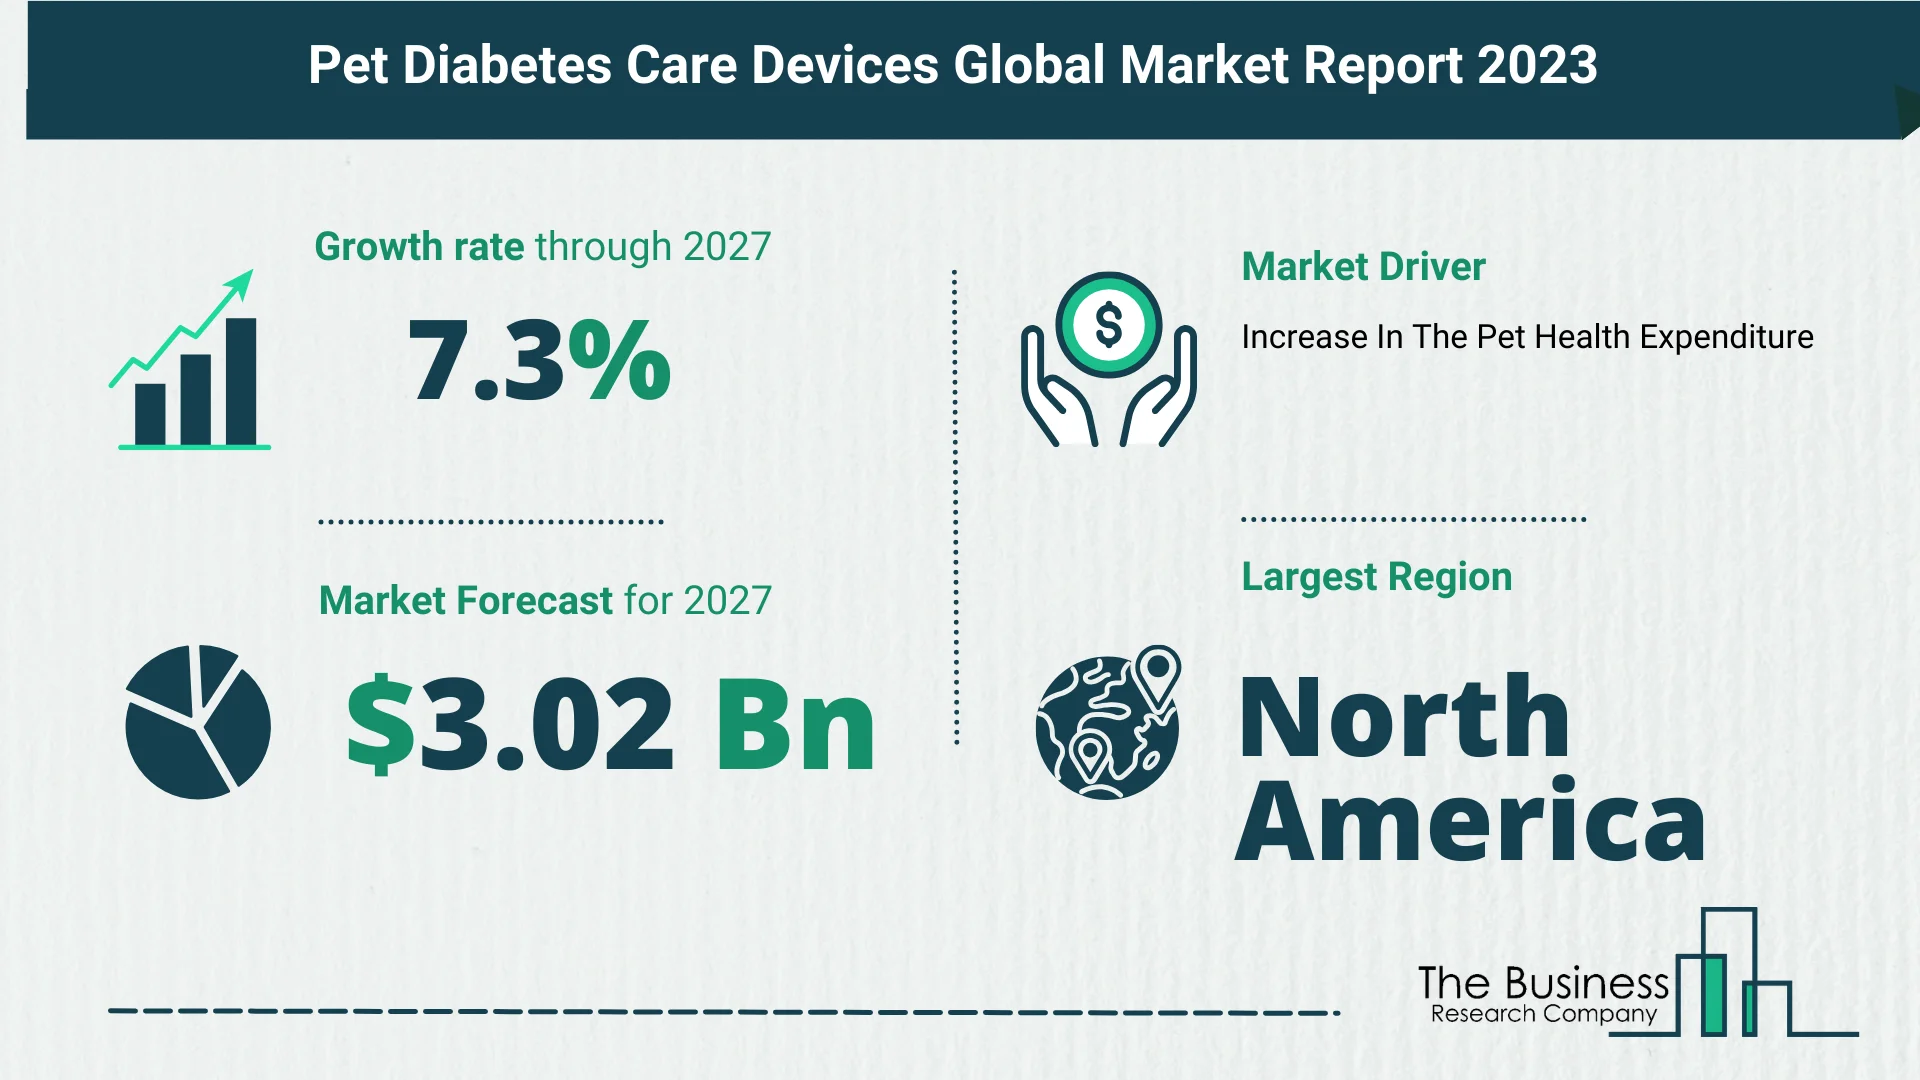 Global Pet Diabetes Care Devices Market Size